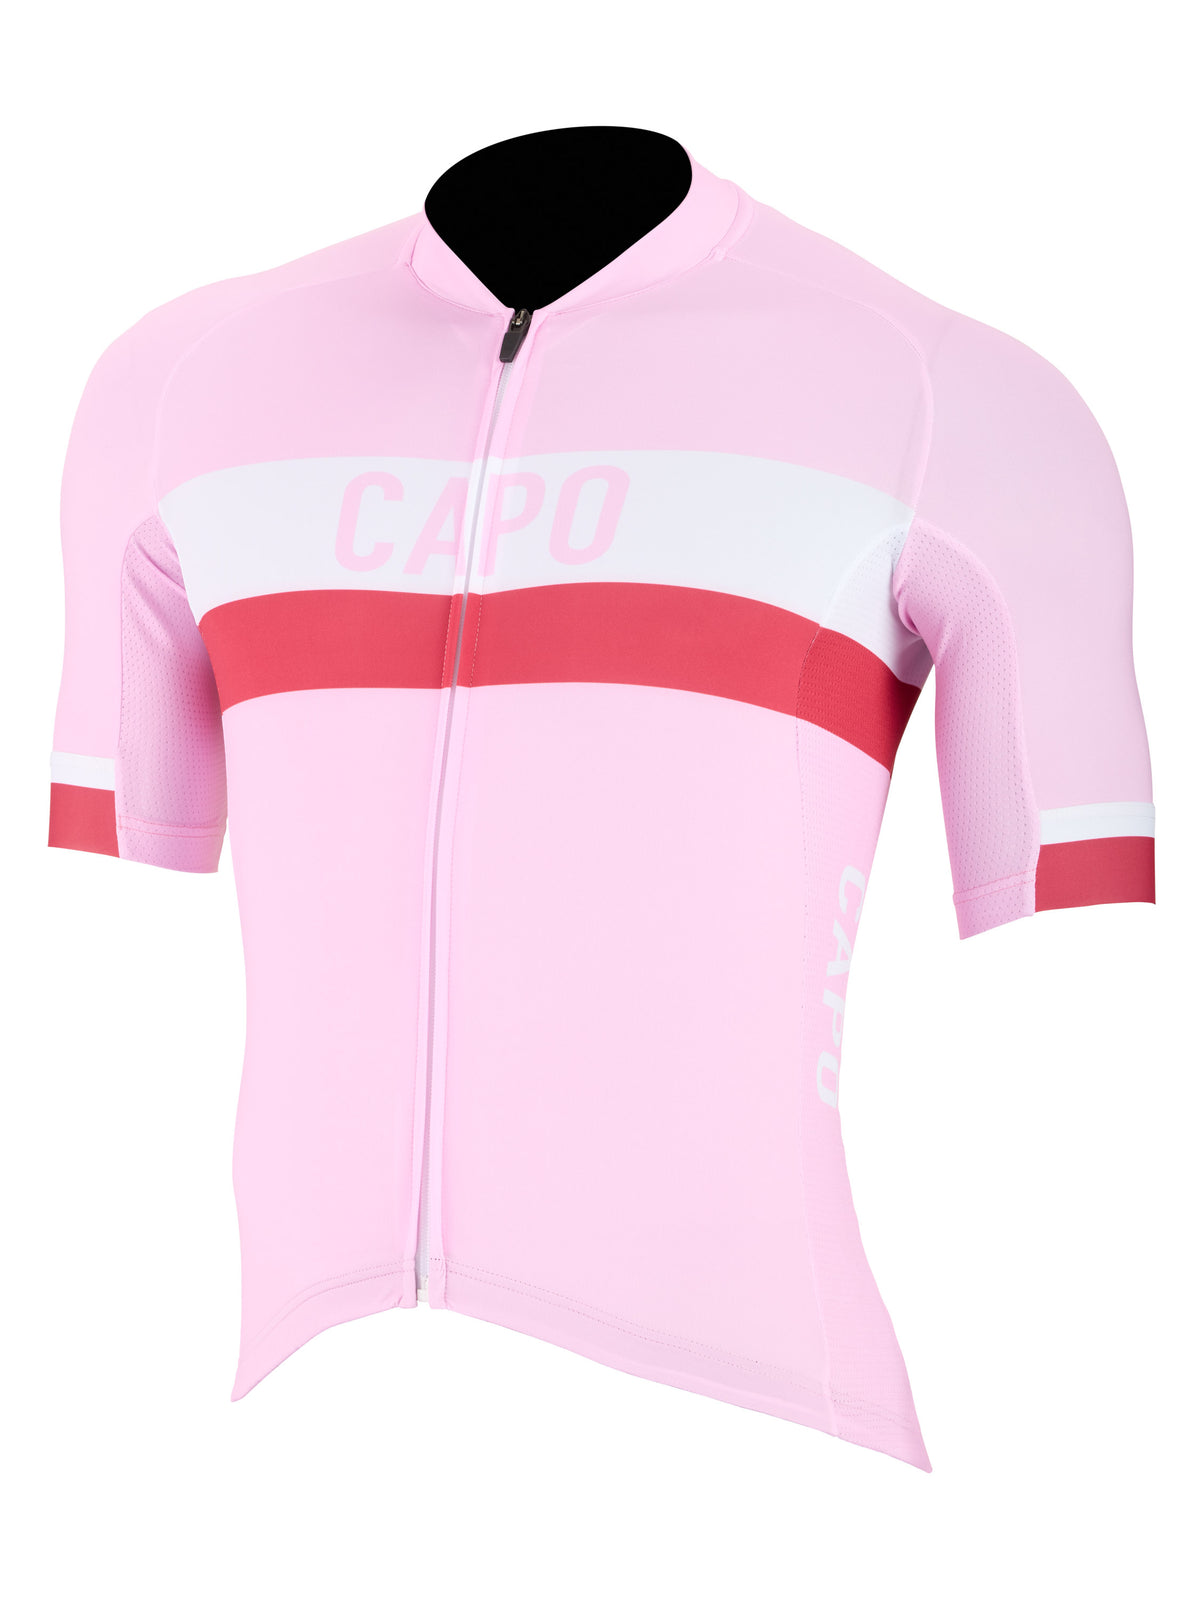 SC Race Stripe Jersey - Pink